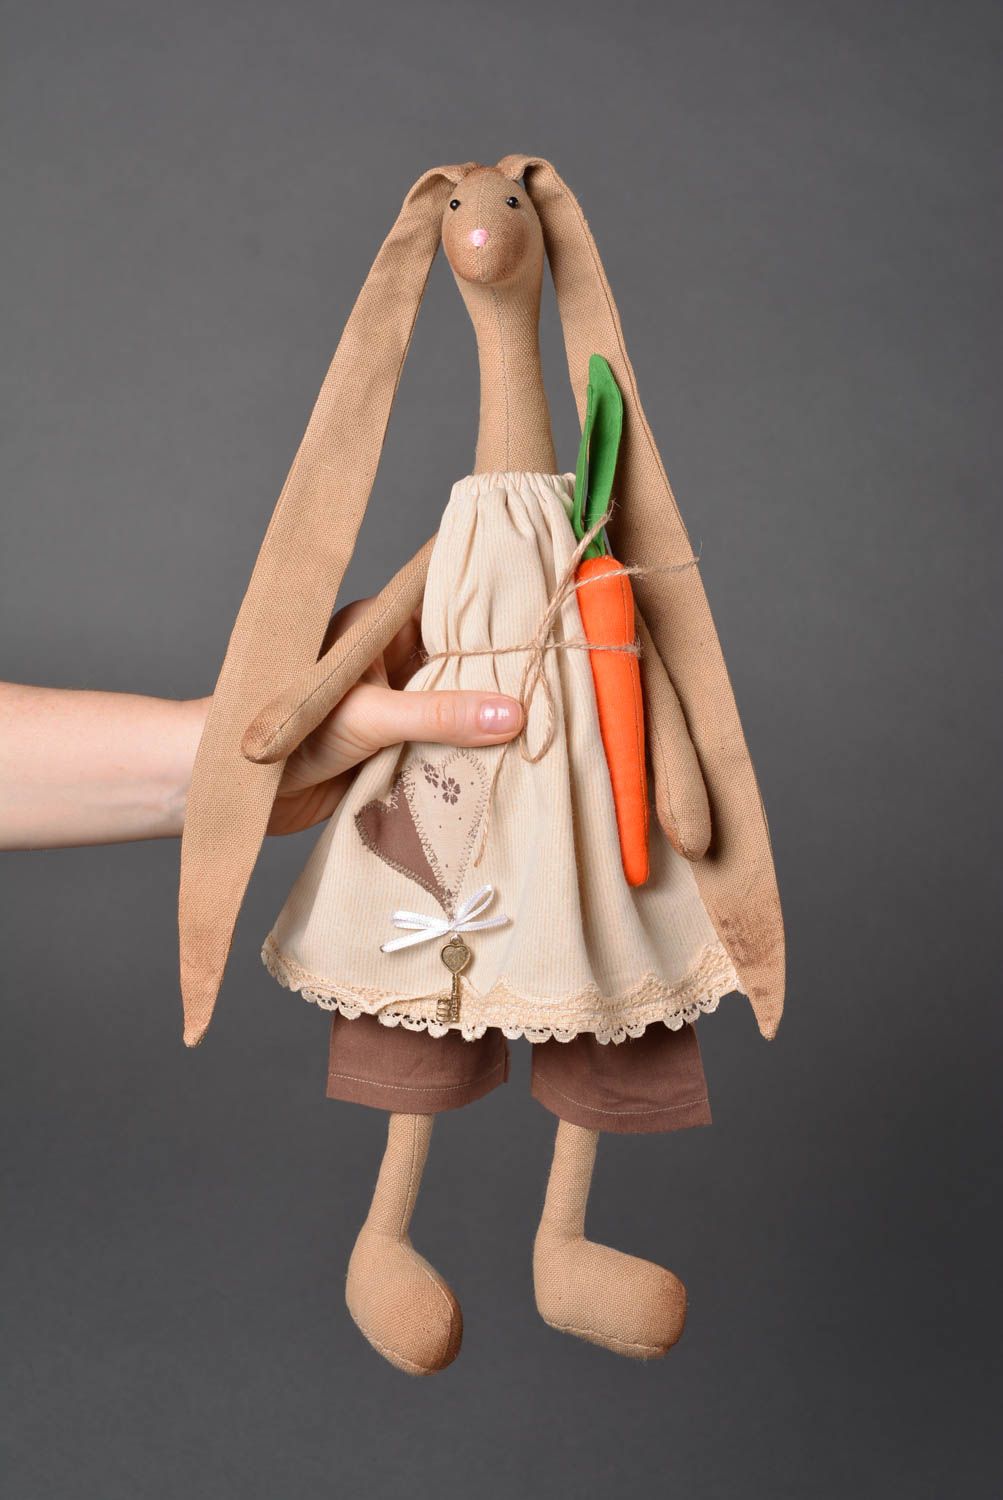 Muñeco de tela hecho a mano peluche original bonito juguete para niños inusual foto 3